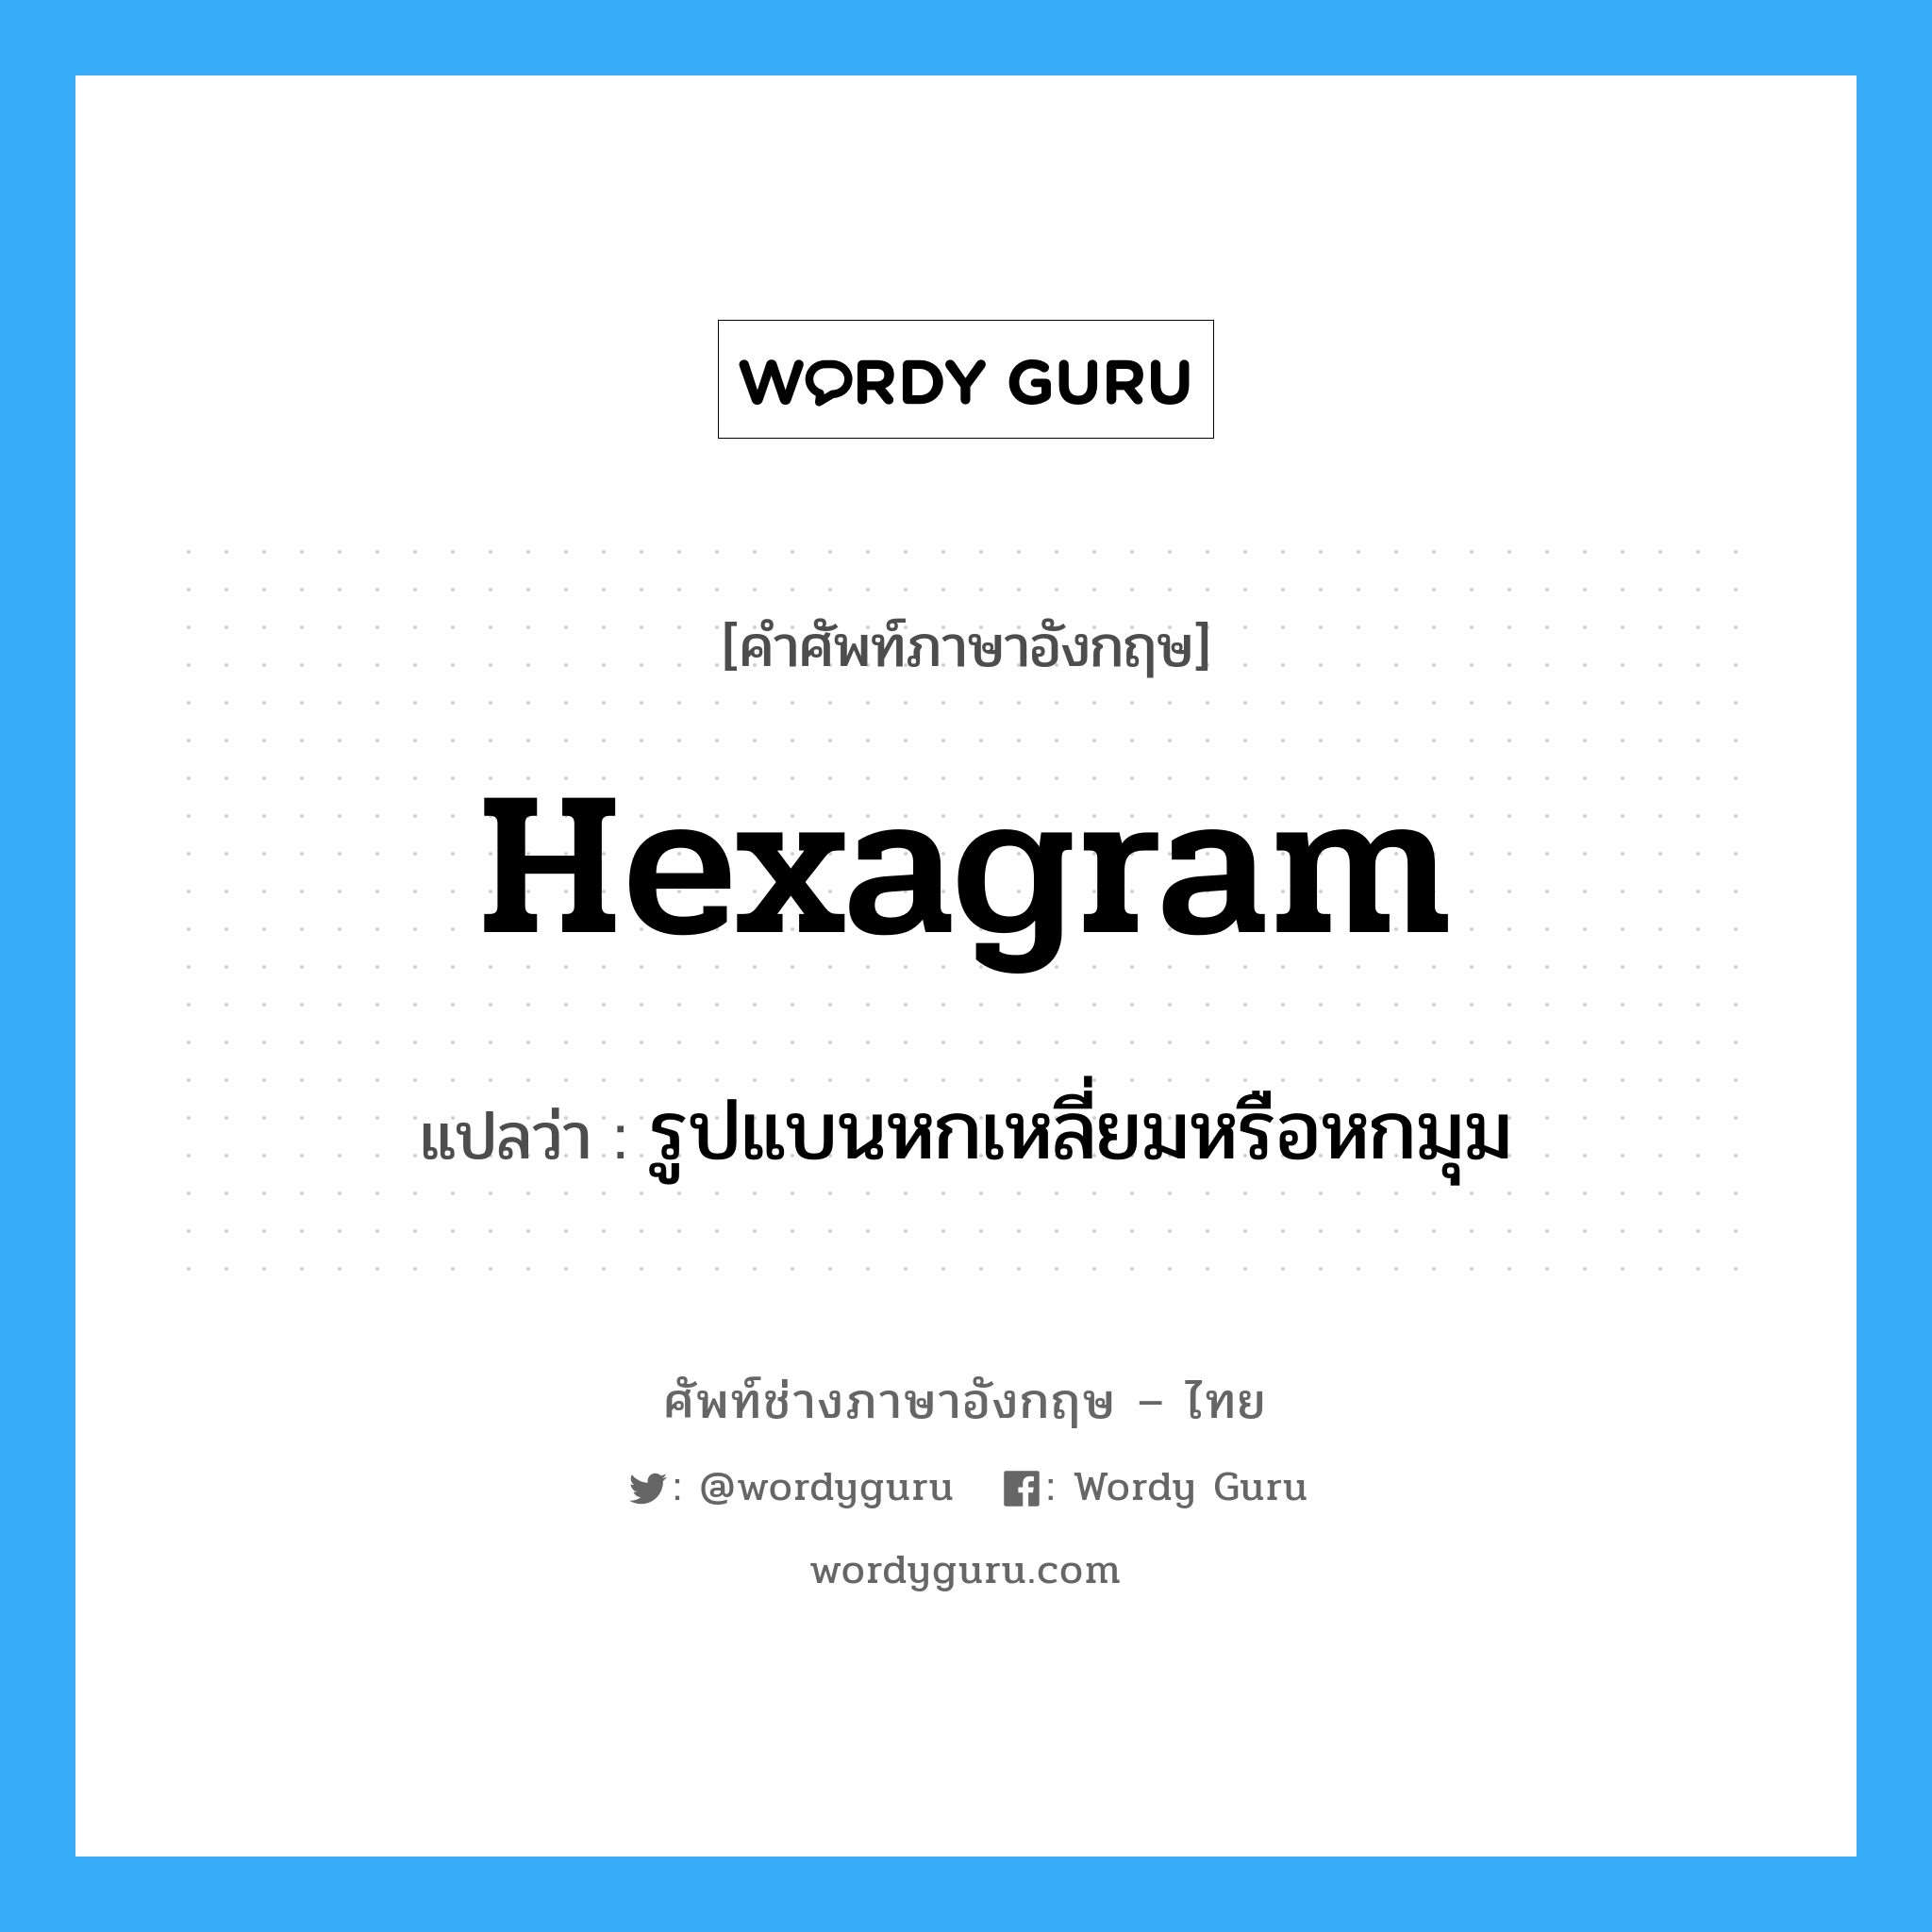 hexagram แปลว่า?, คำศัพท์ช่างภาษาอังกฤษ - ไทย hexagram คำศัพท์ภาษาอังกฤษ hexagram แปลว่า รูปแบนหกเหลี่ยมหรือหกมุม